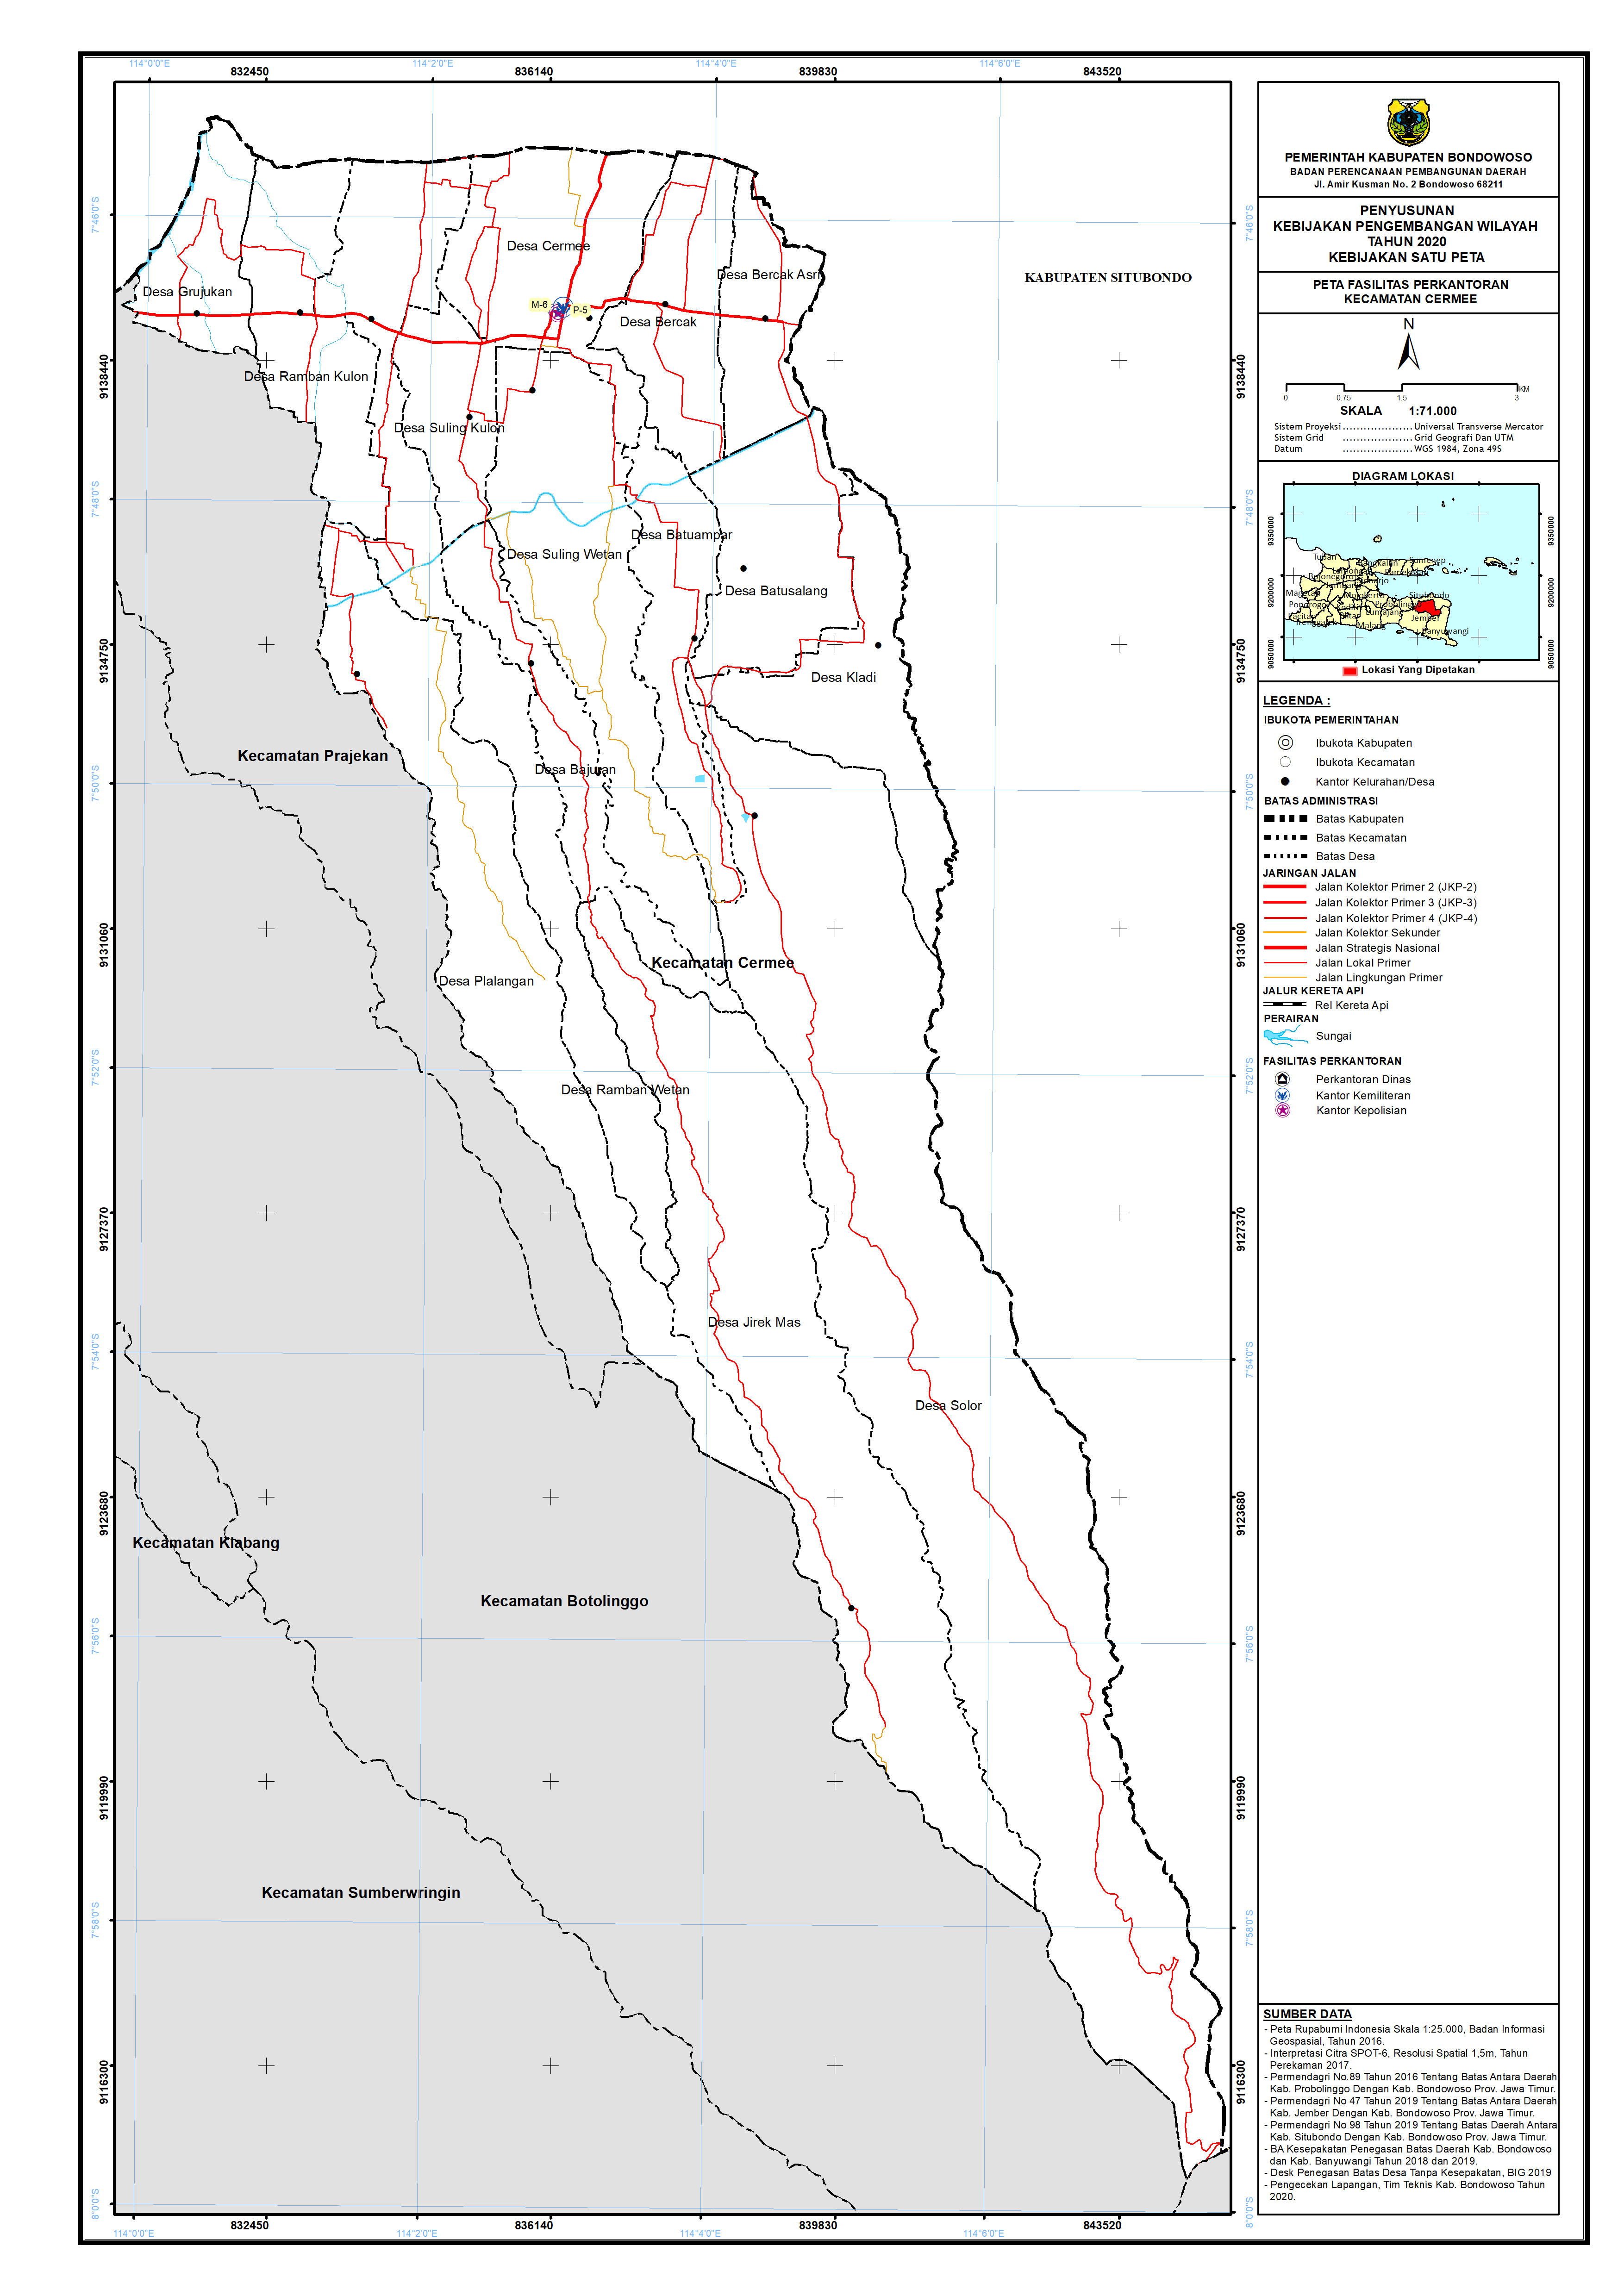 Peta Persebaran Perkantoran Kecamatan Cermee.png